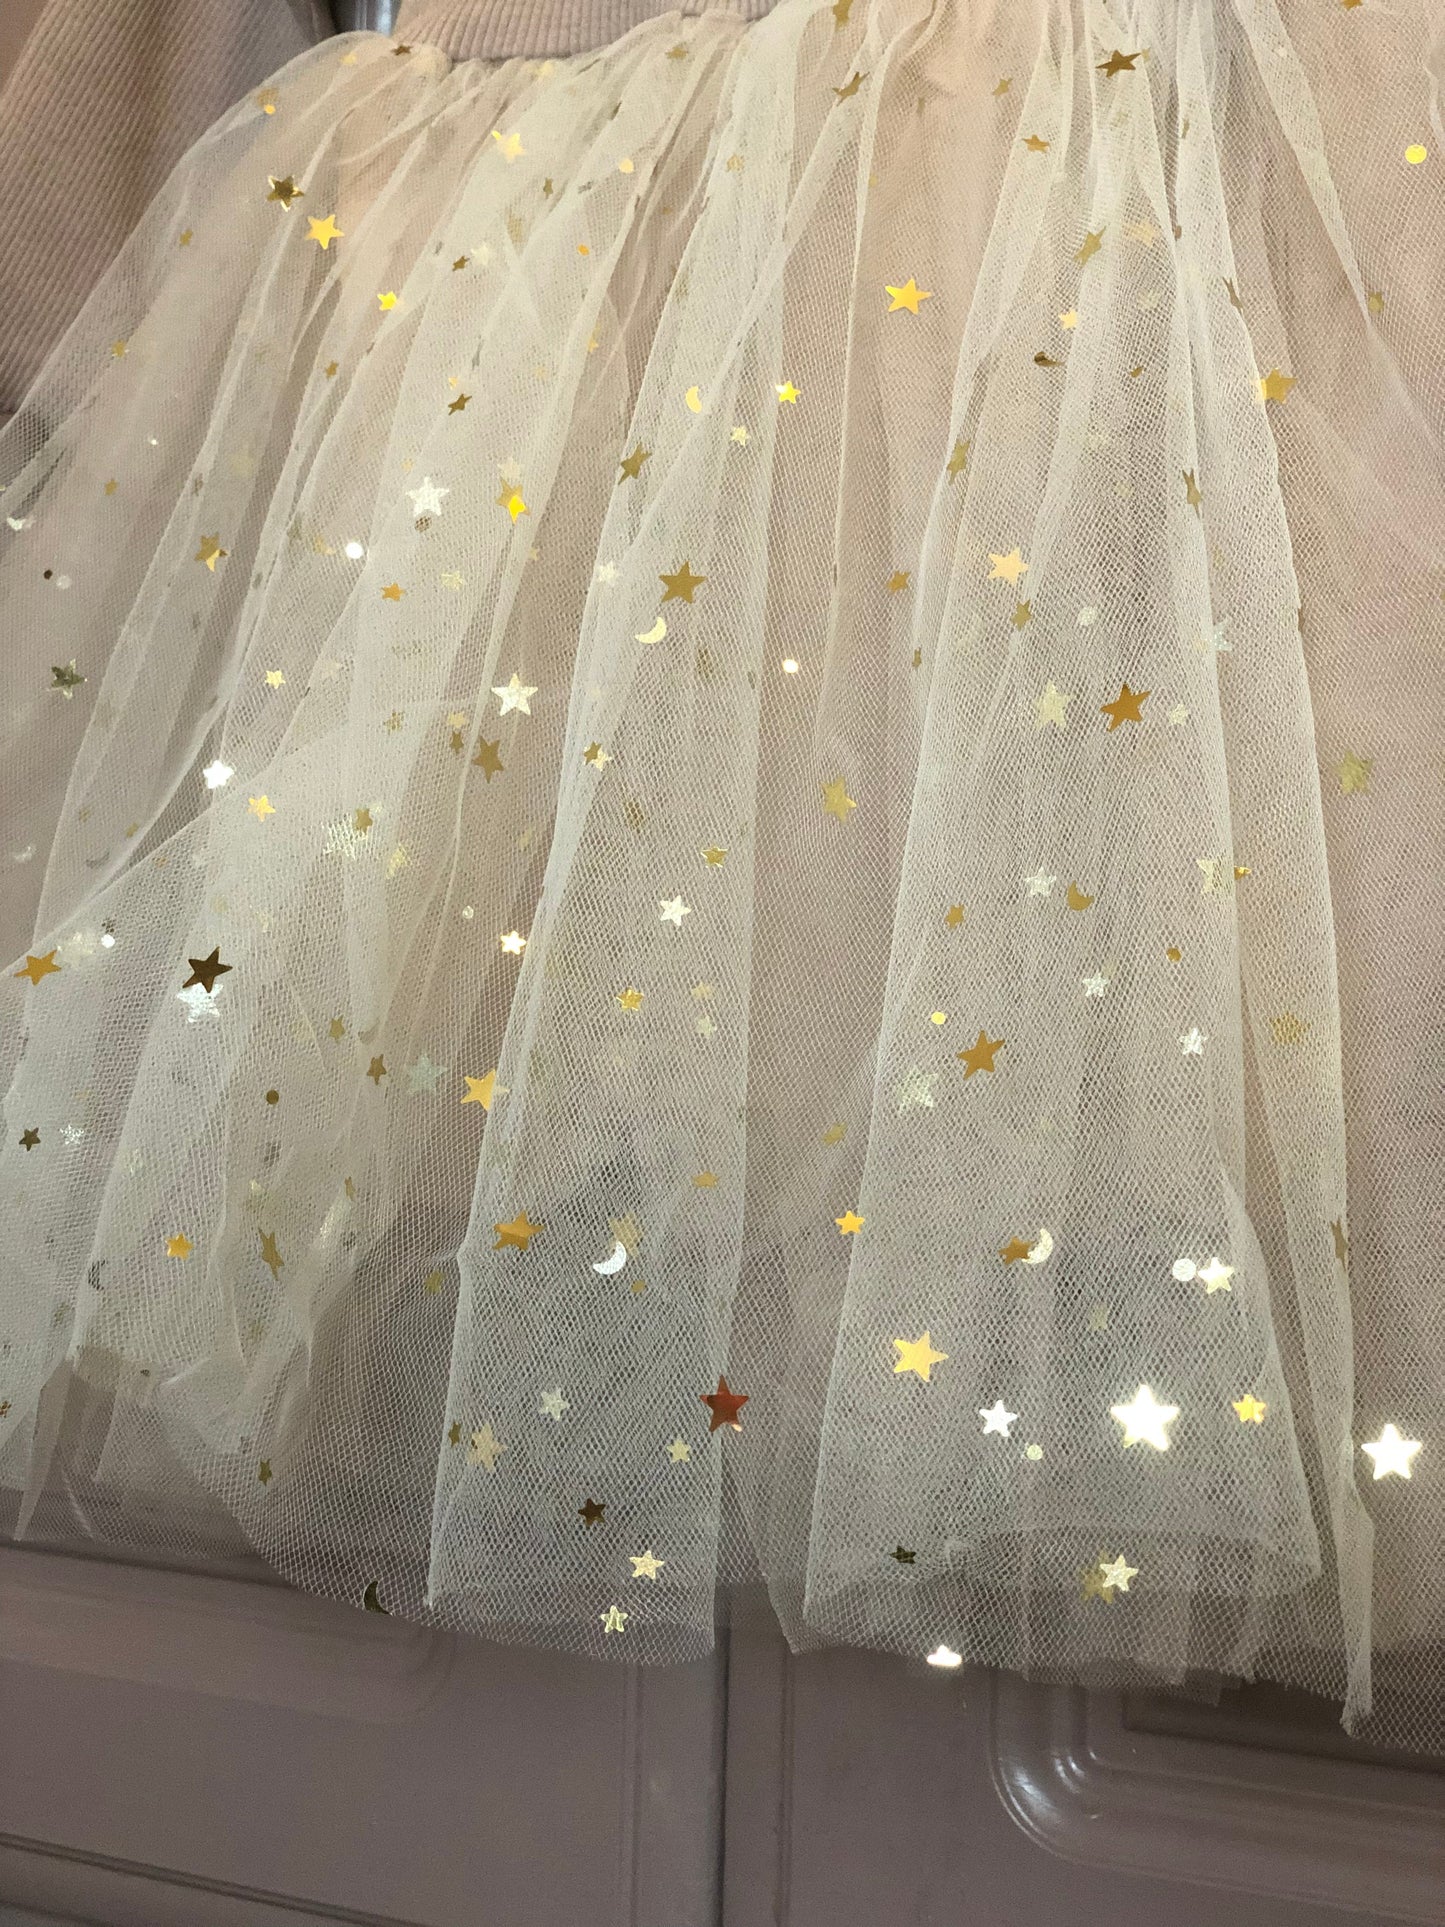 Wish upon a Star Tutu Dress